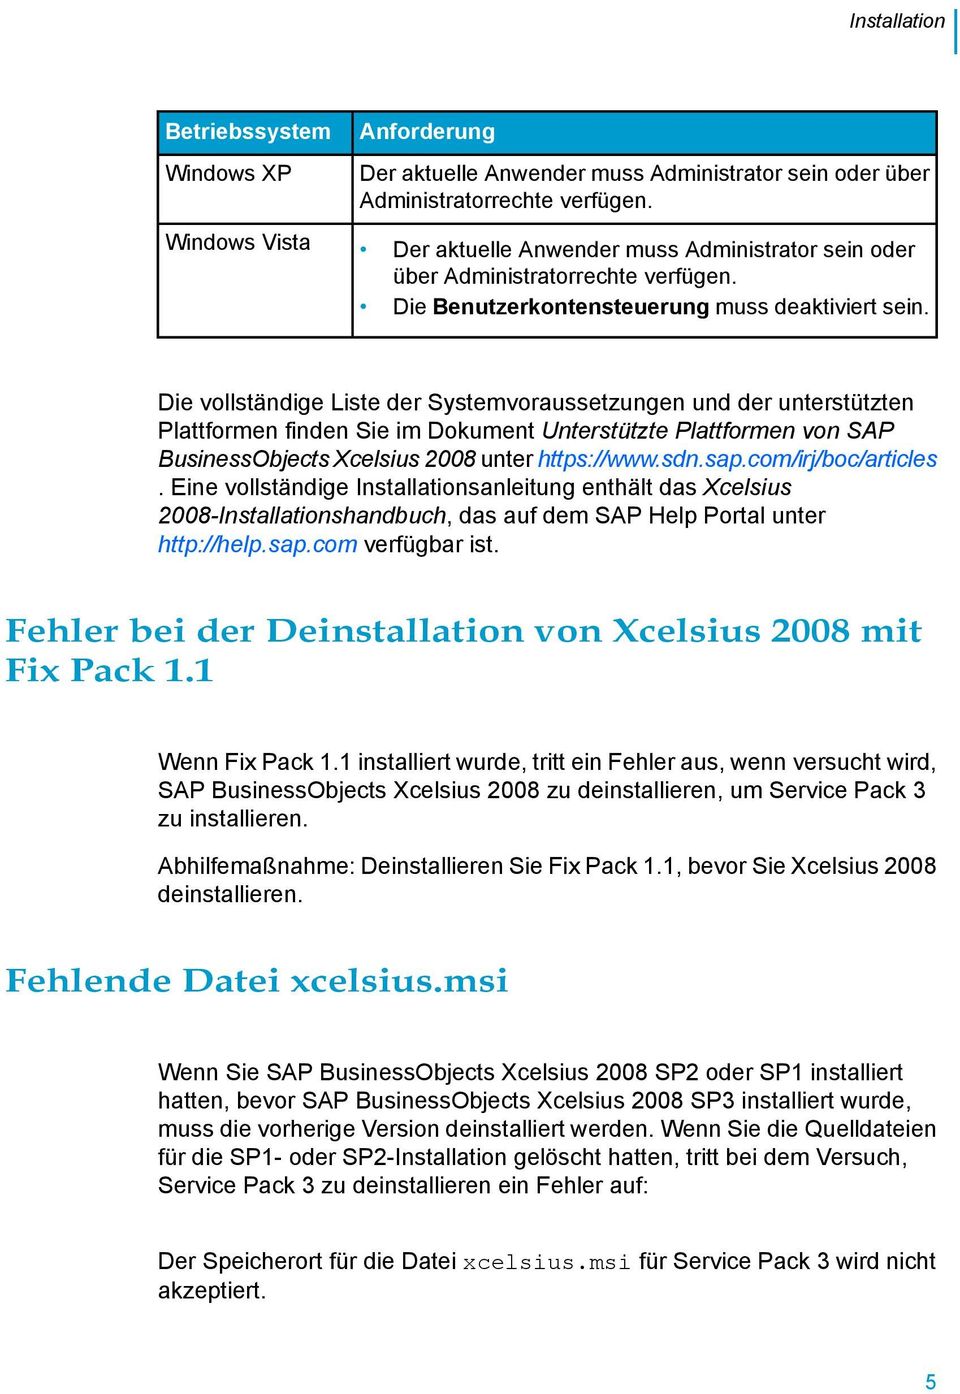 Die vollständige Liste der Systemvoraussetzungen und der unterstützten Plattformen finden Sie im Dokument Unterstützte Plattformen von SAP BusinessObjects Xcelsius 2008 unter https://www.sdn.sap.